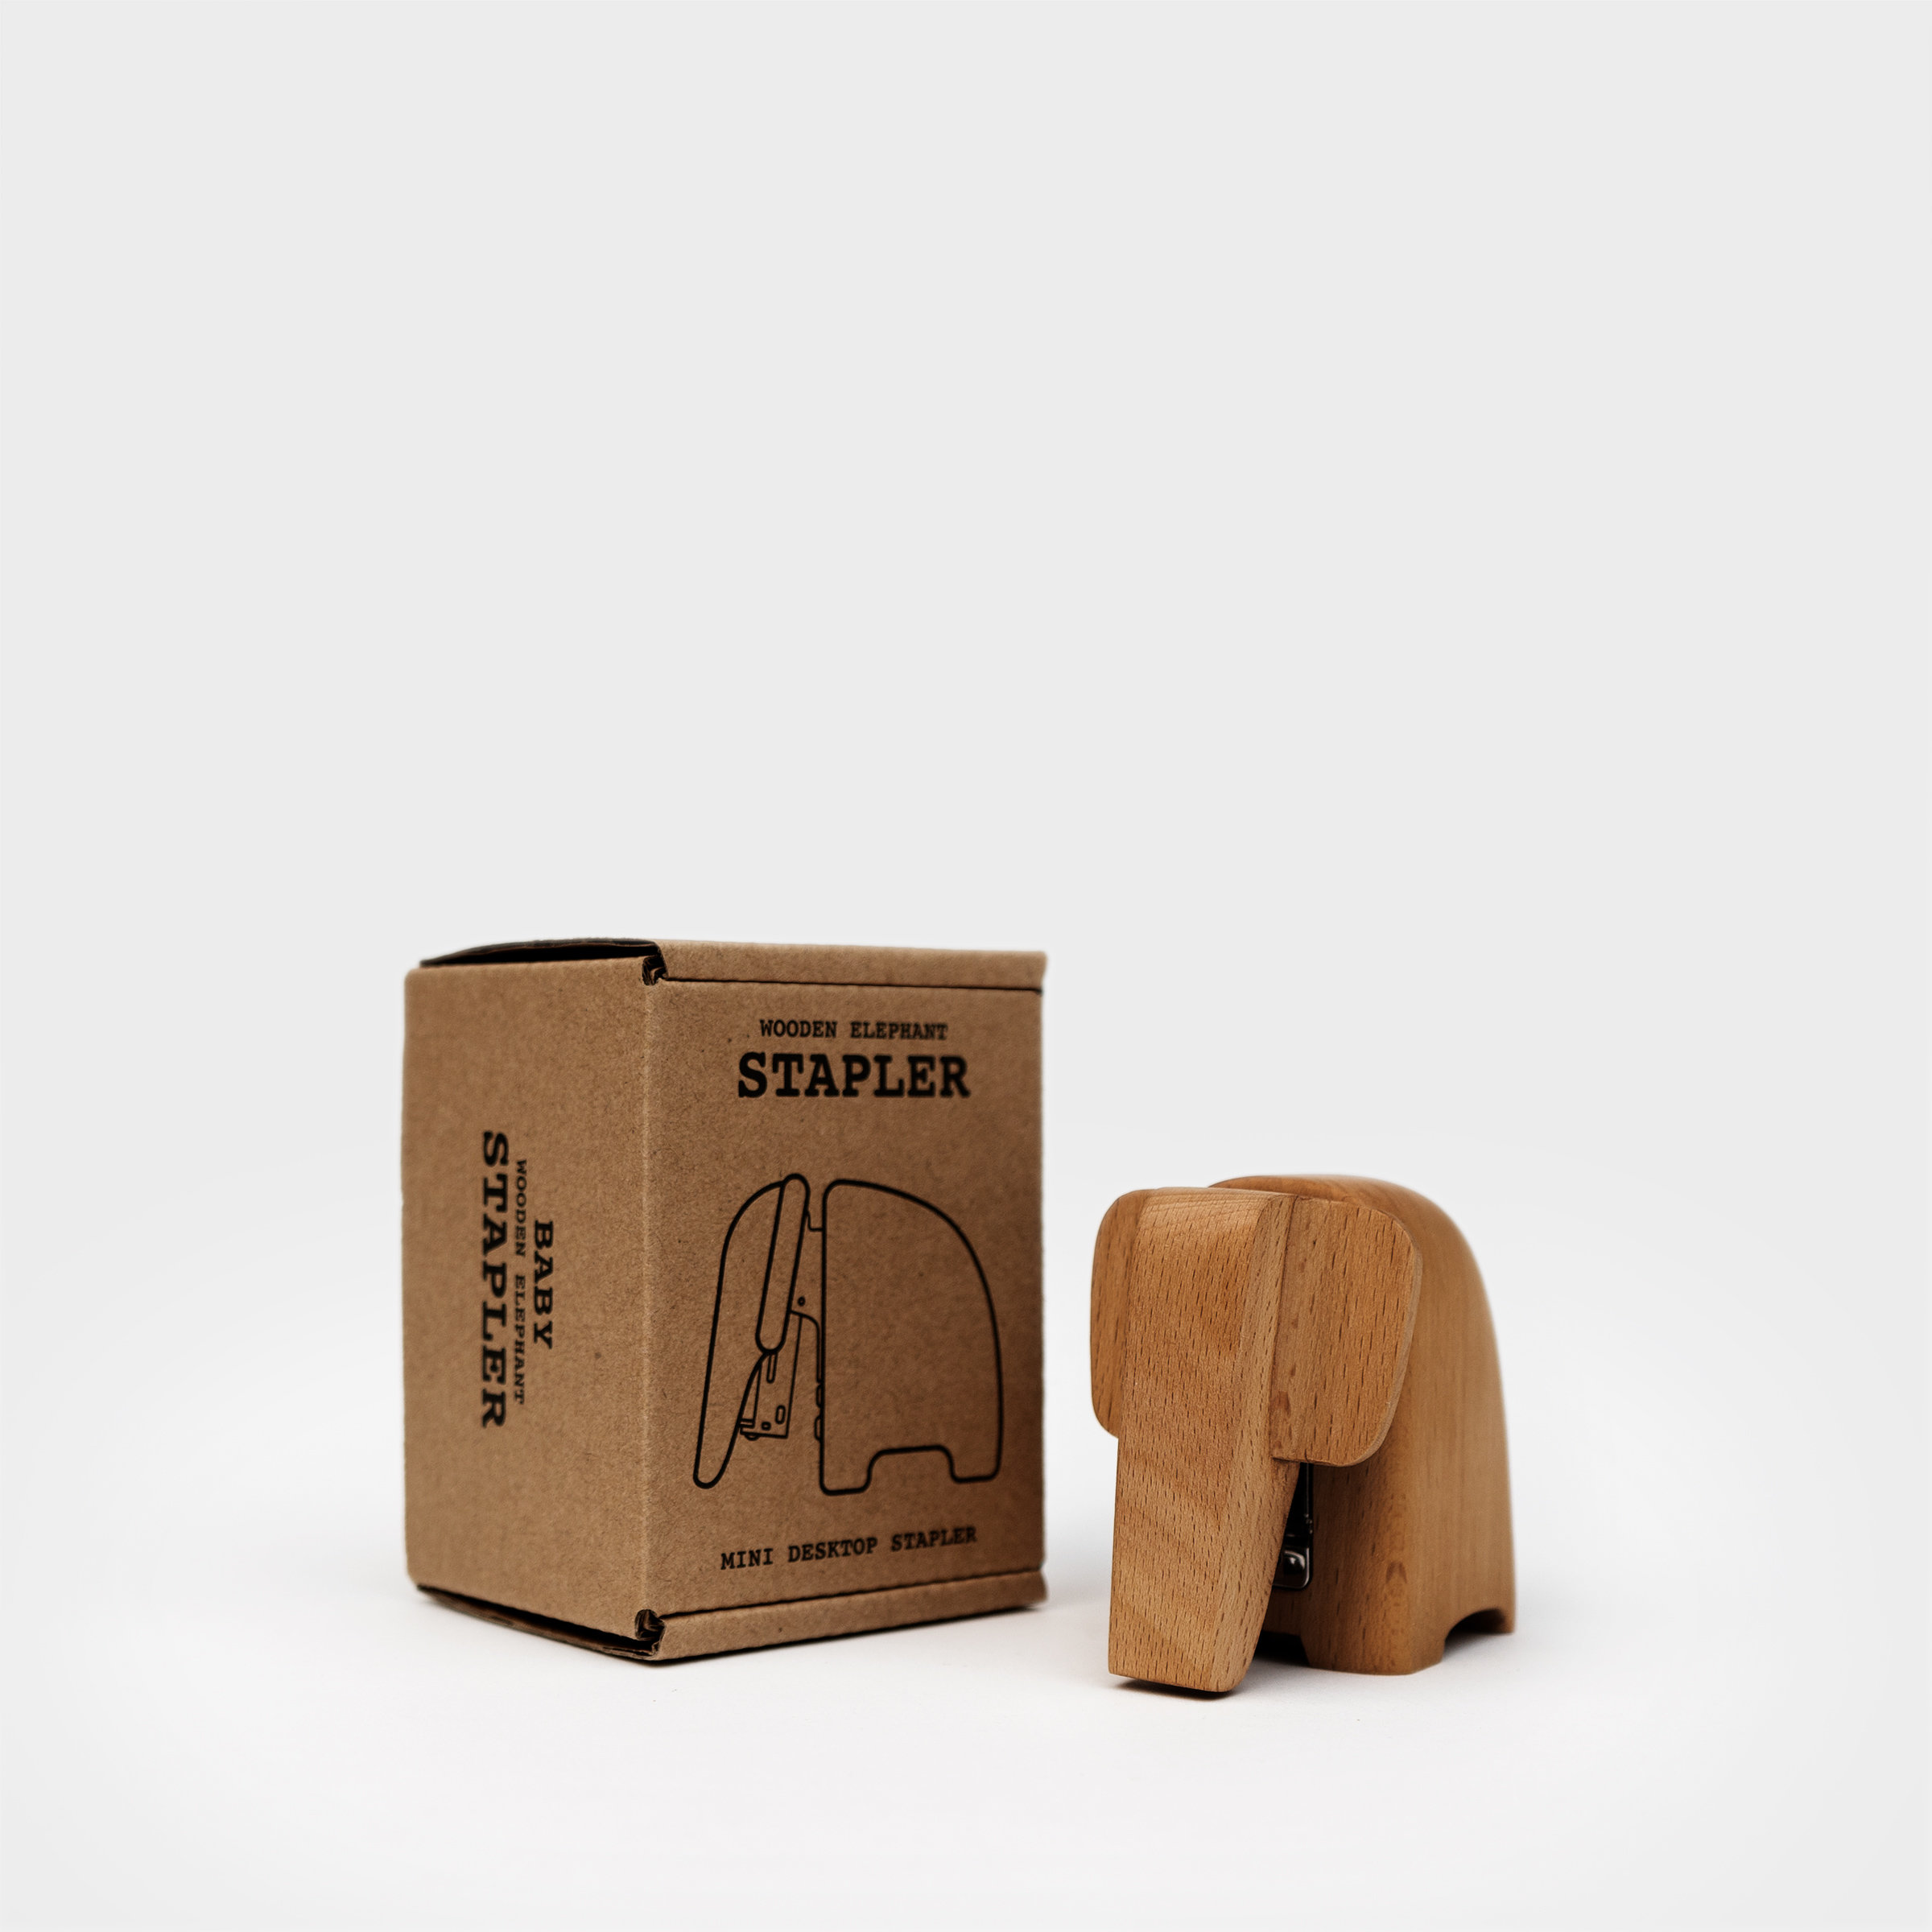 Baby Elephant Stapler Packaging